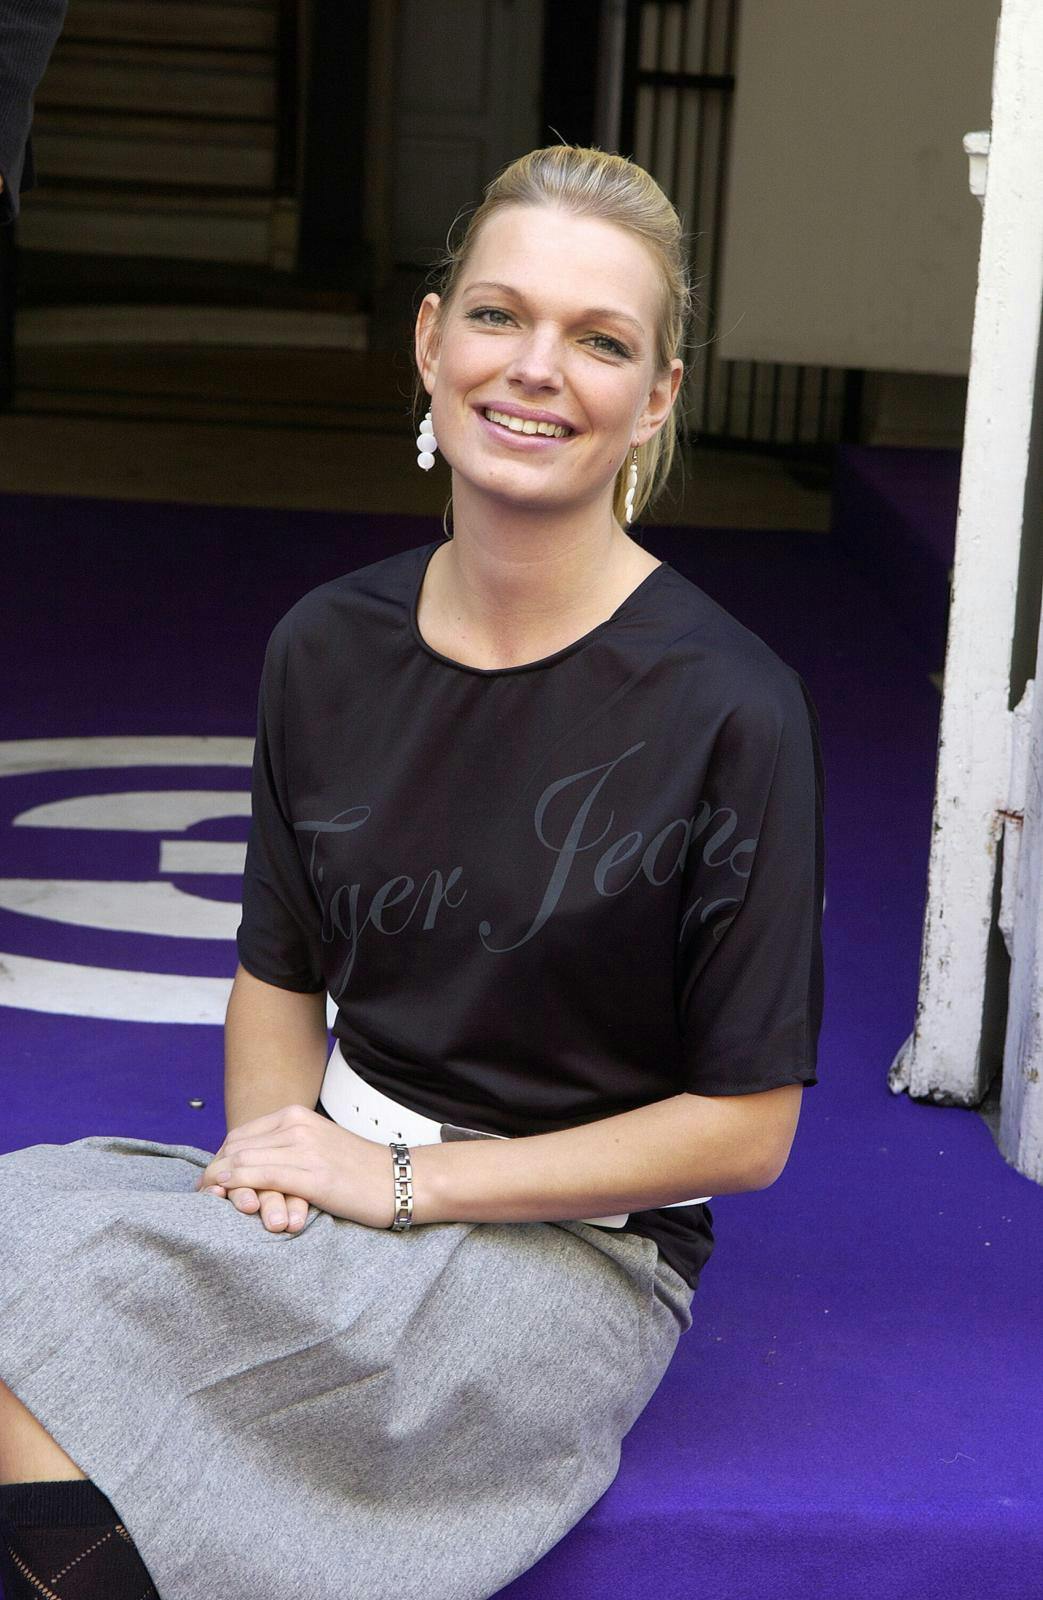 Lisbeth Kiel deltog i 2005 i "Paradise Hotel". Siden blev hun blogger og er i dag formand for gruppen af influenter og bloggere i Dansk Journalistforbund.